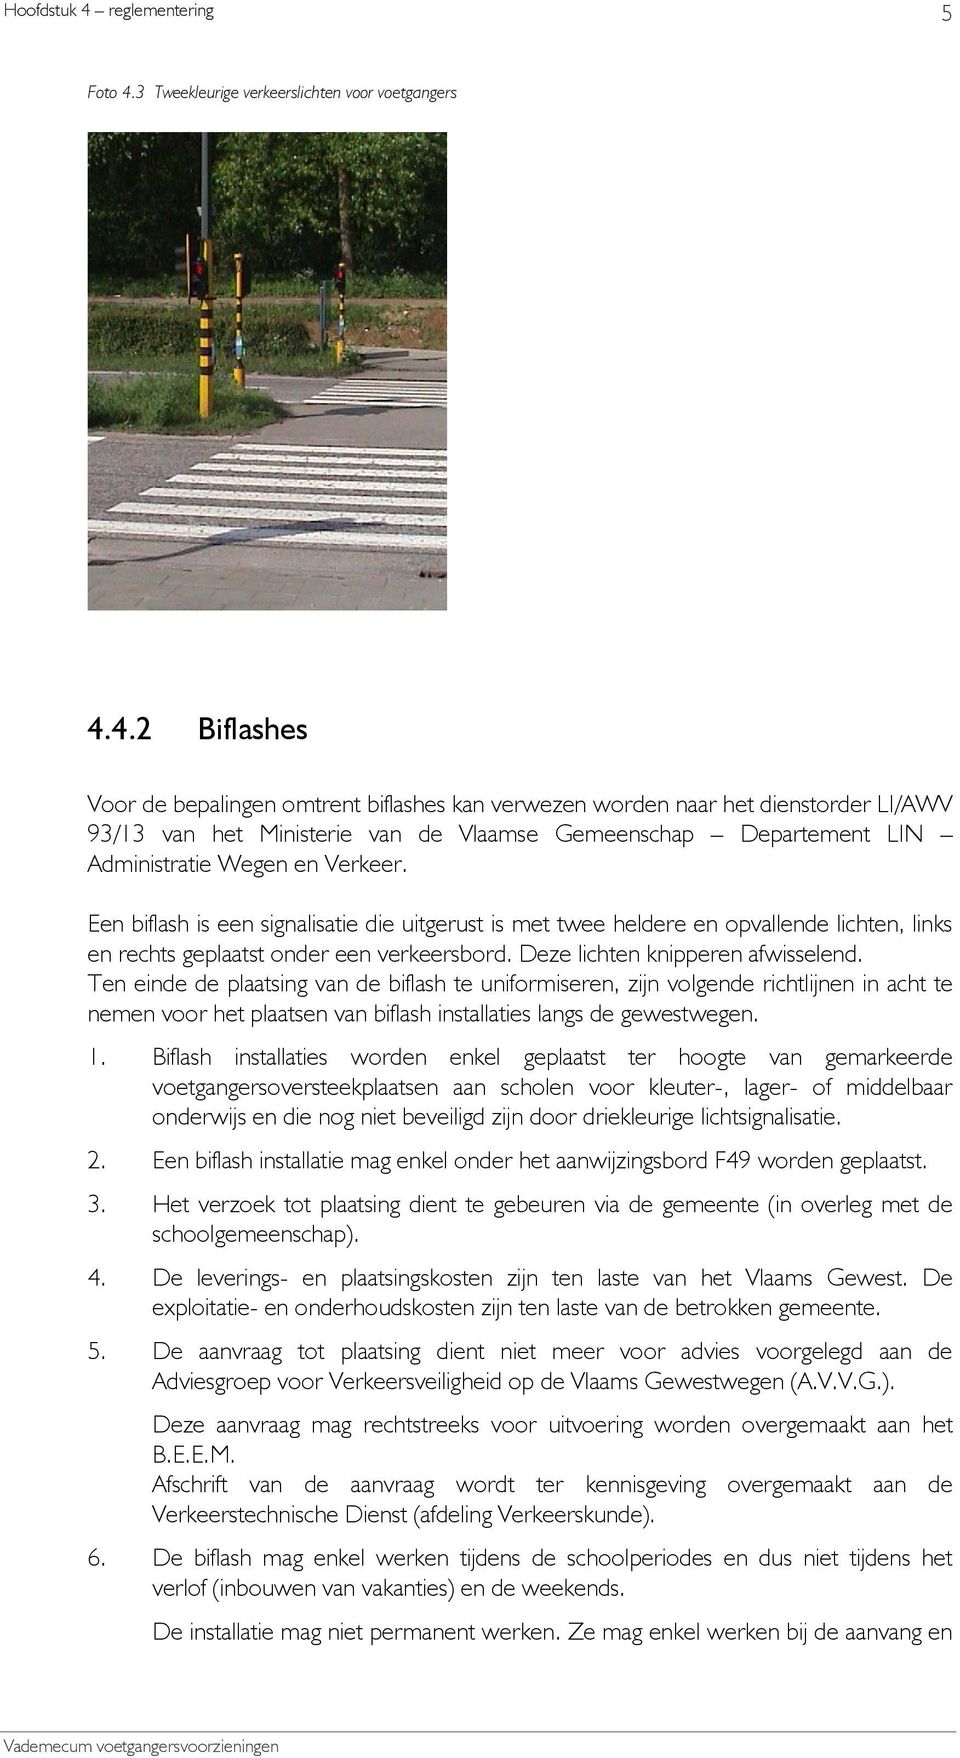 4.2 Biflashes Voor de bepalingen omtrent biflashes kan verwezen worden naar het dienstorder LI/AWV 93/13 van het Ministerie van de Vlaamse Gemeenschap Departement LIN Administratie Wegen en Verkeer.